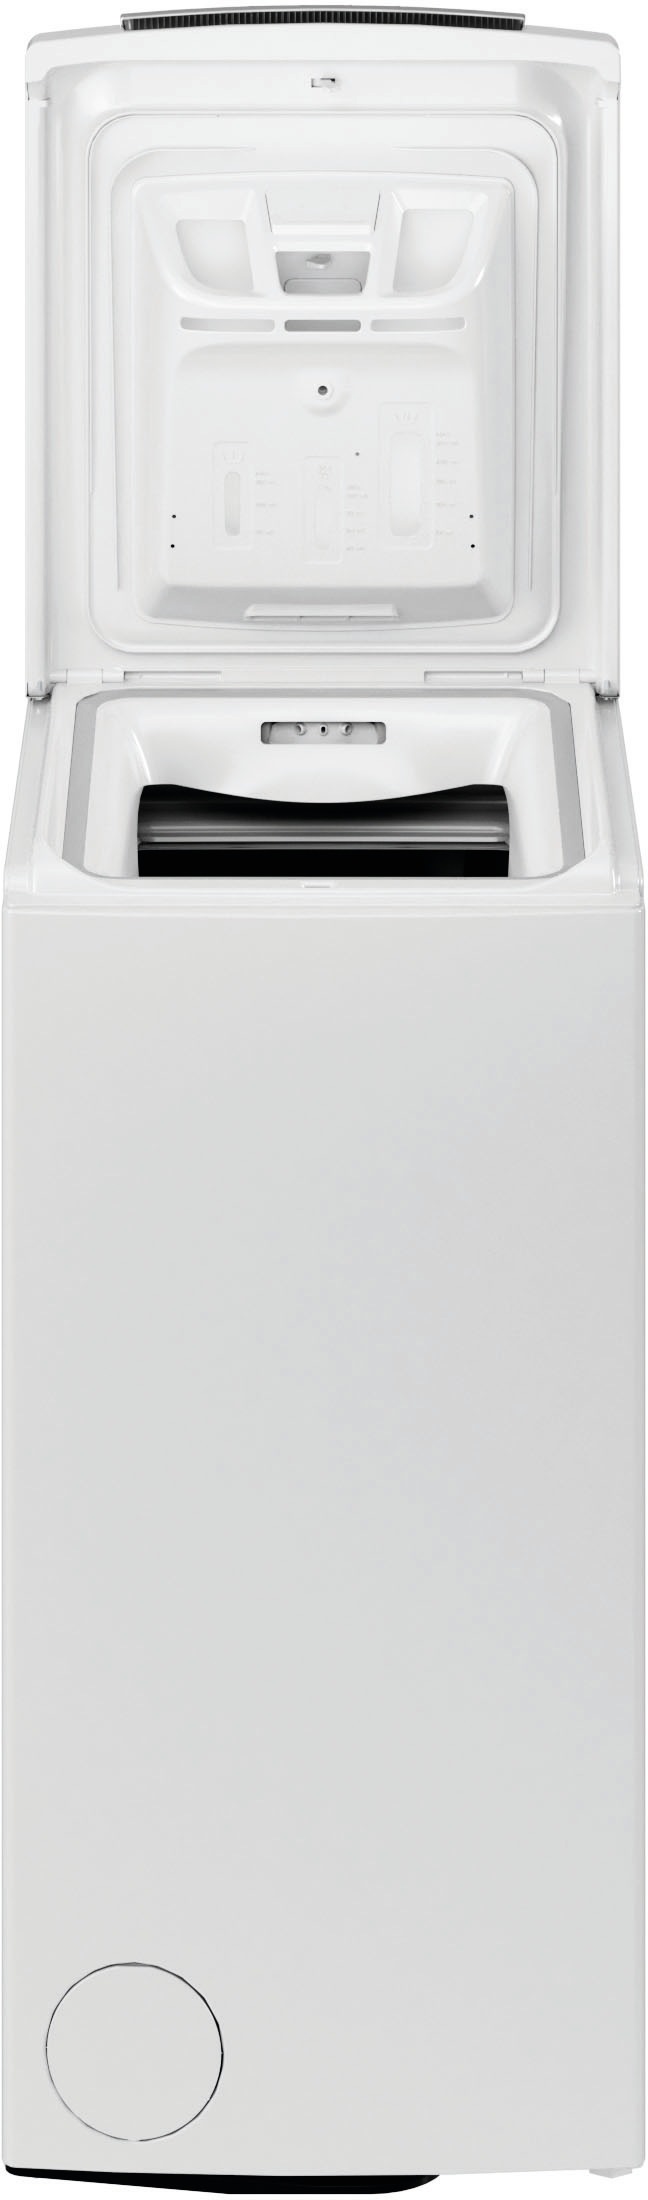 BAUKNECHT Waschmaschine Toplader WMT CC, 6513 »WMT 1200 online kg, CC«, 4 6513 6,5 U/ Jahre min, Herstellergarantie bei